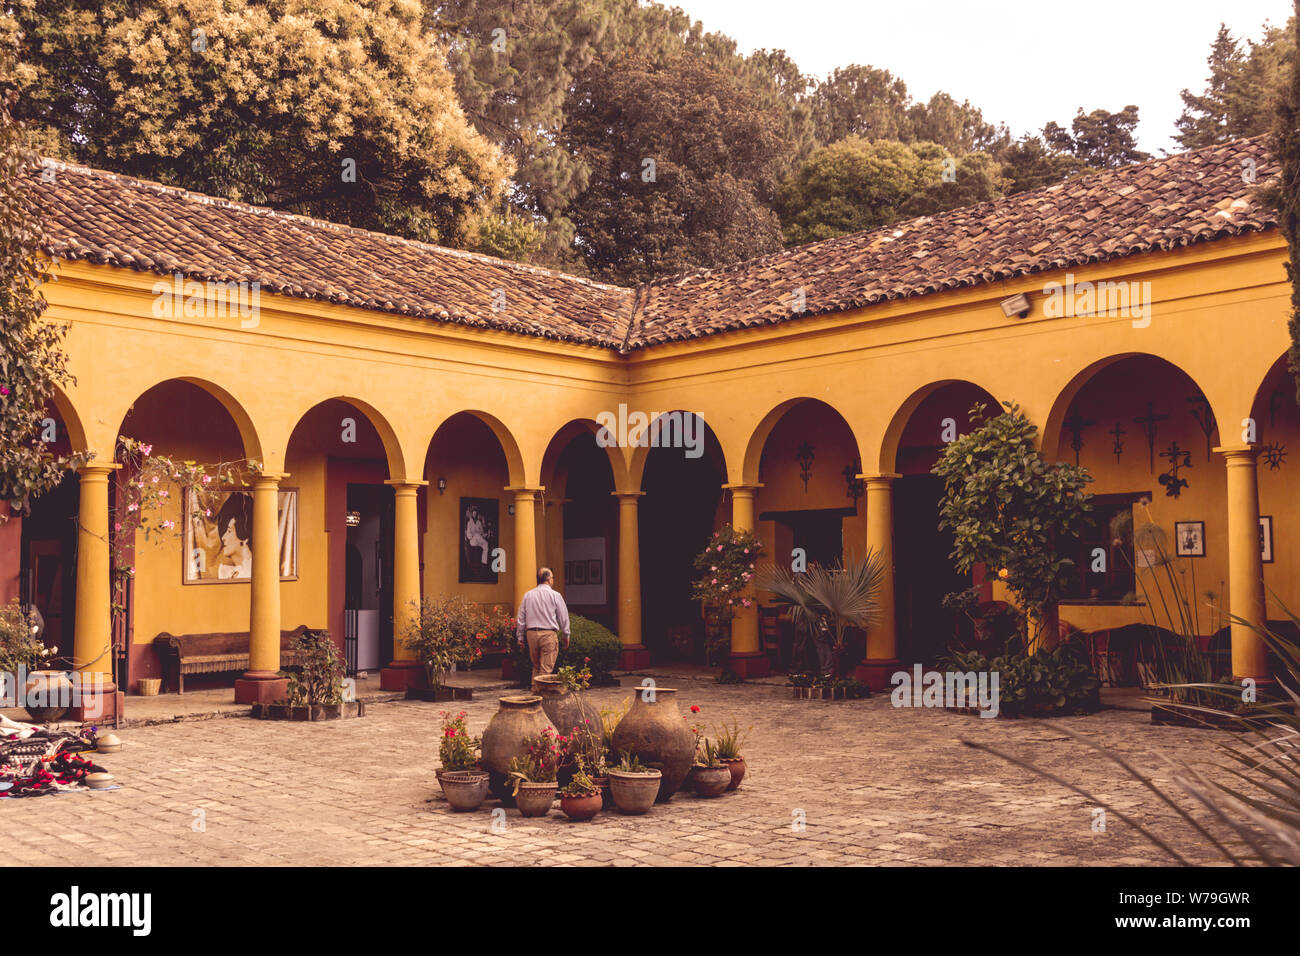 San Cristobal de las Casas, Chiapas / Mexico - 21/07/2019: Detail of Na Bolom cultural site in San Cristobal de las Casas Mexico Stock Photo